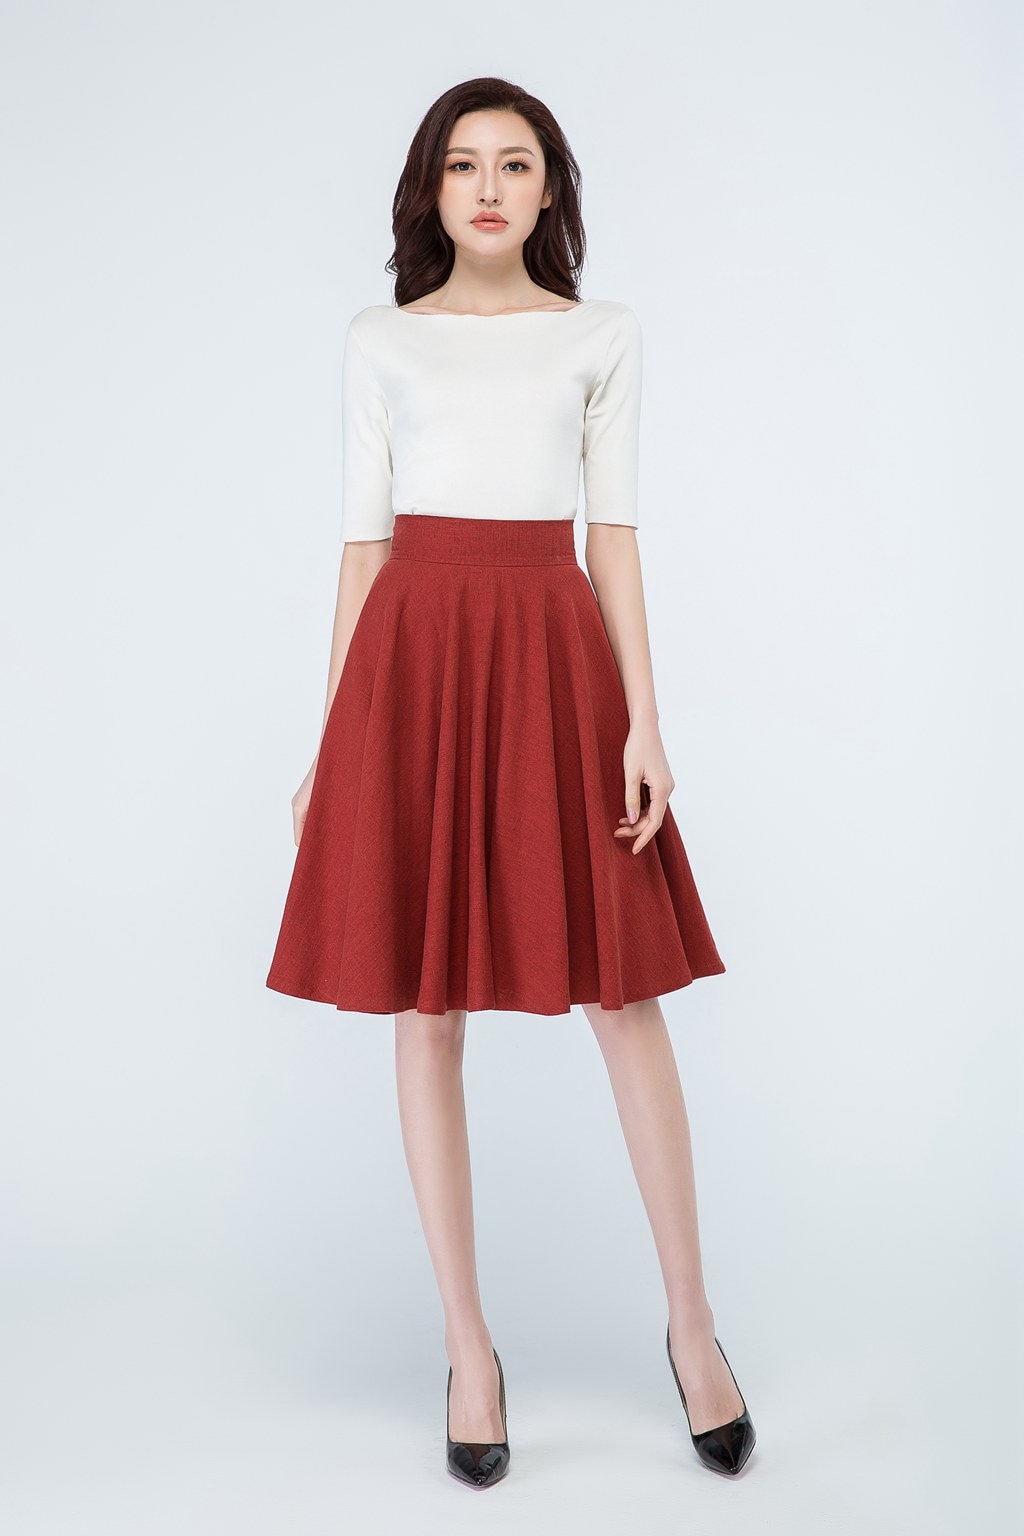 1950s Red Linen Full Circle Skirt High Waisted Skater Skirt - Etsy